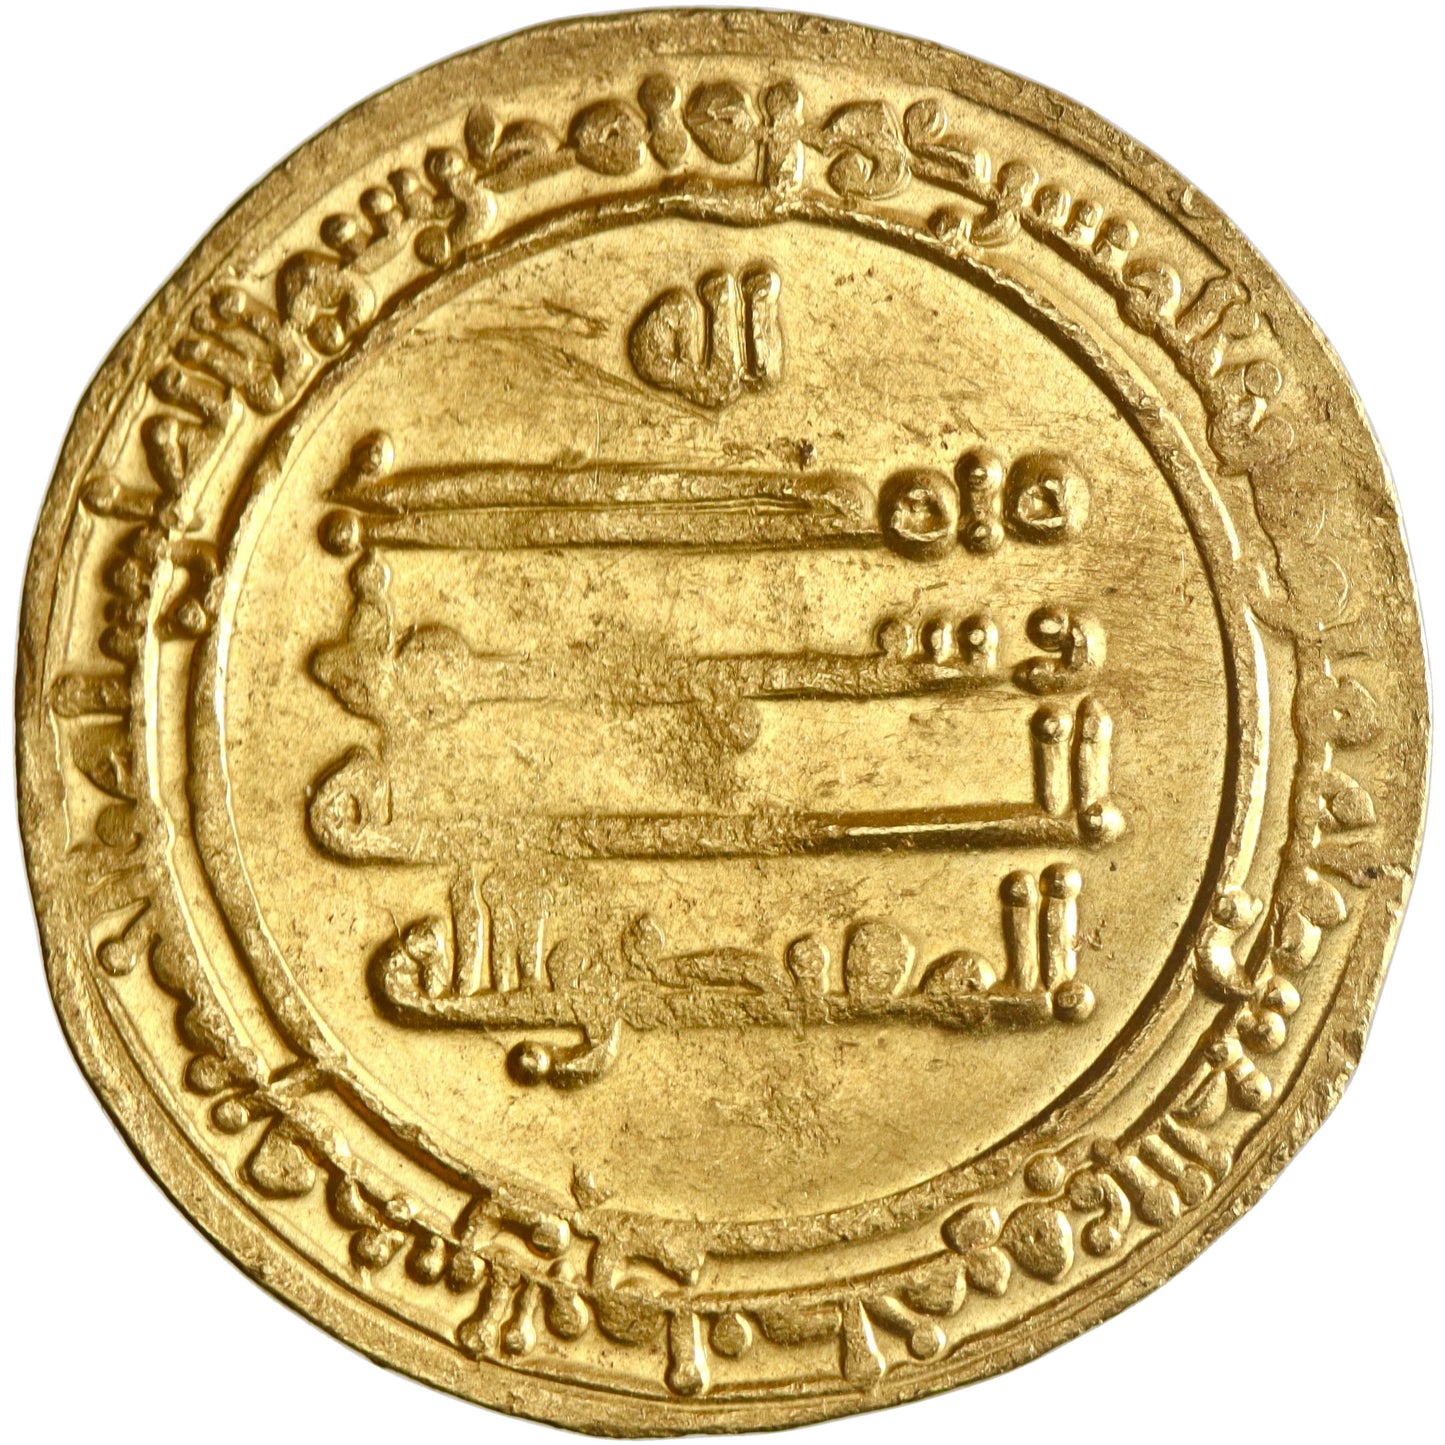 Abbasid, al-Muqtadir, gold dinar, Misr (Egypt) mint, AH 296